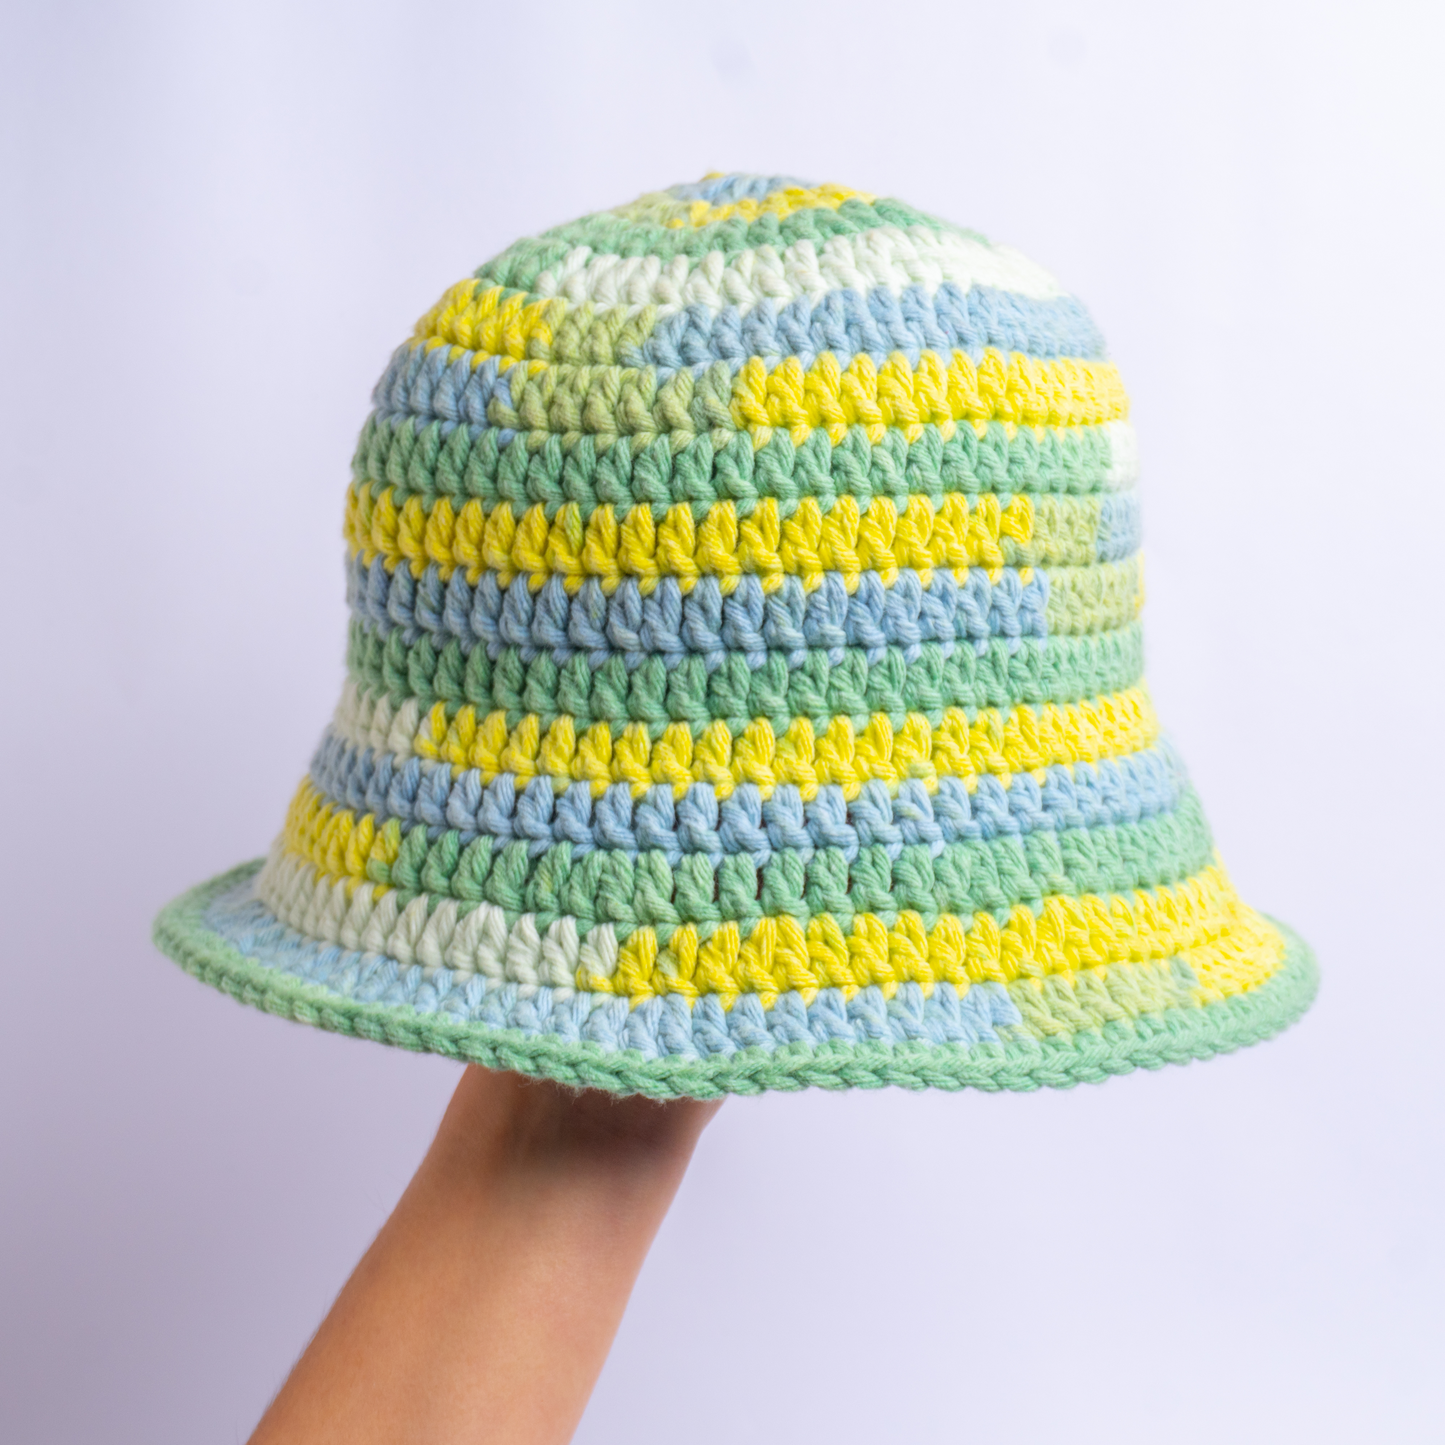 MARACUYA Bucket hat | Hand Crocheted